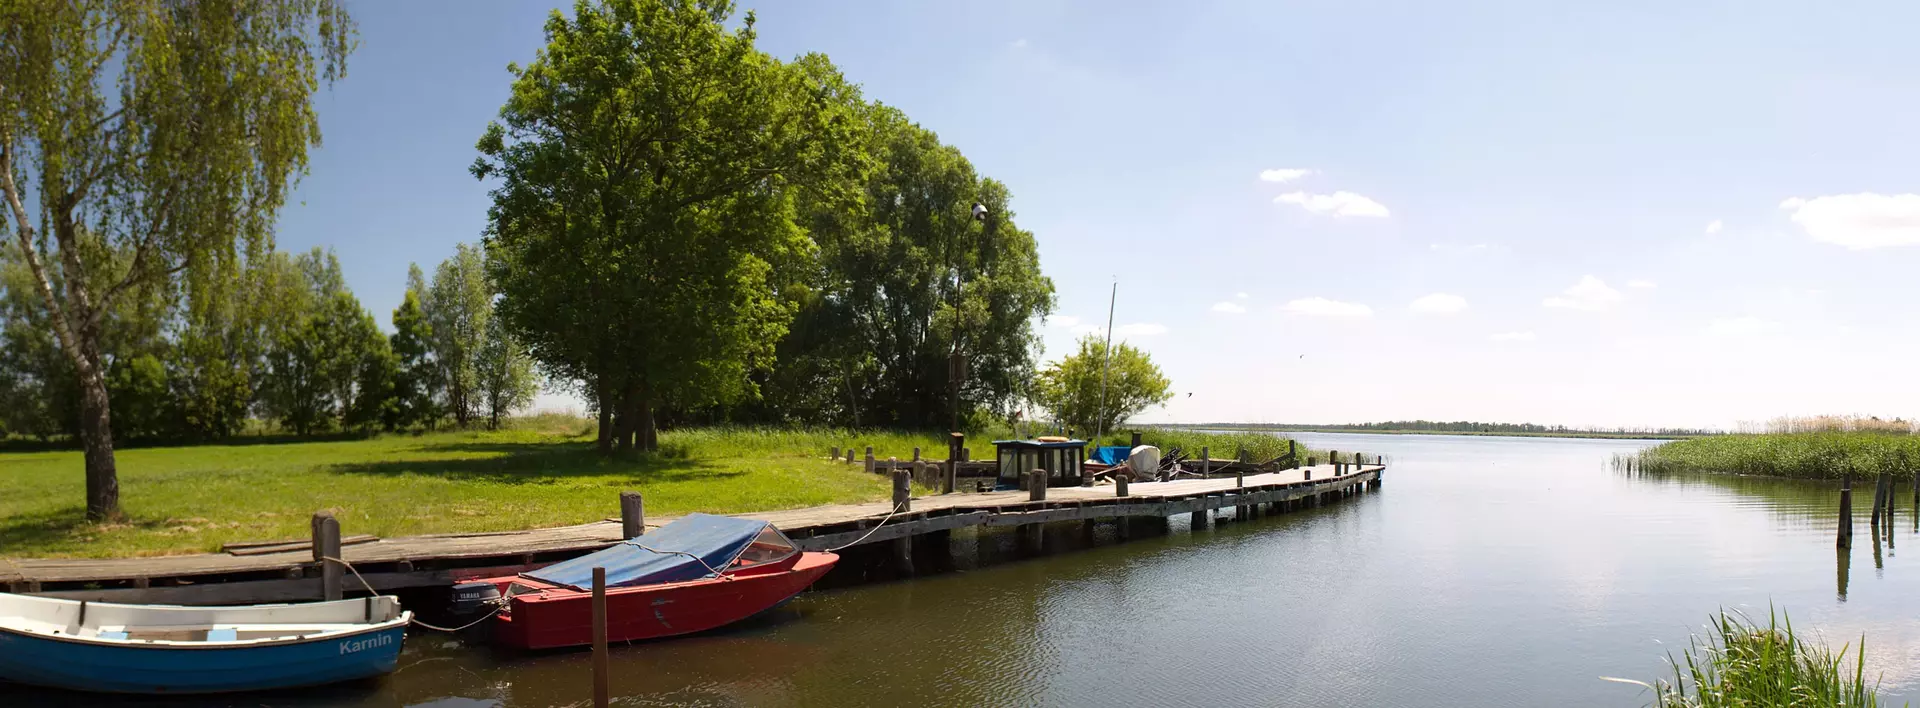 Urlaub am Wasser: Boote auf der Insel Usedom